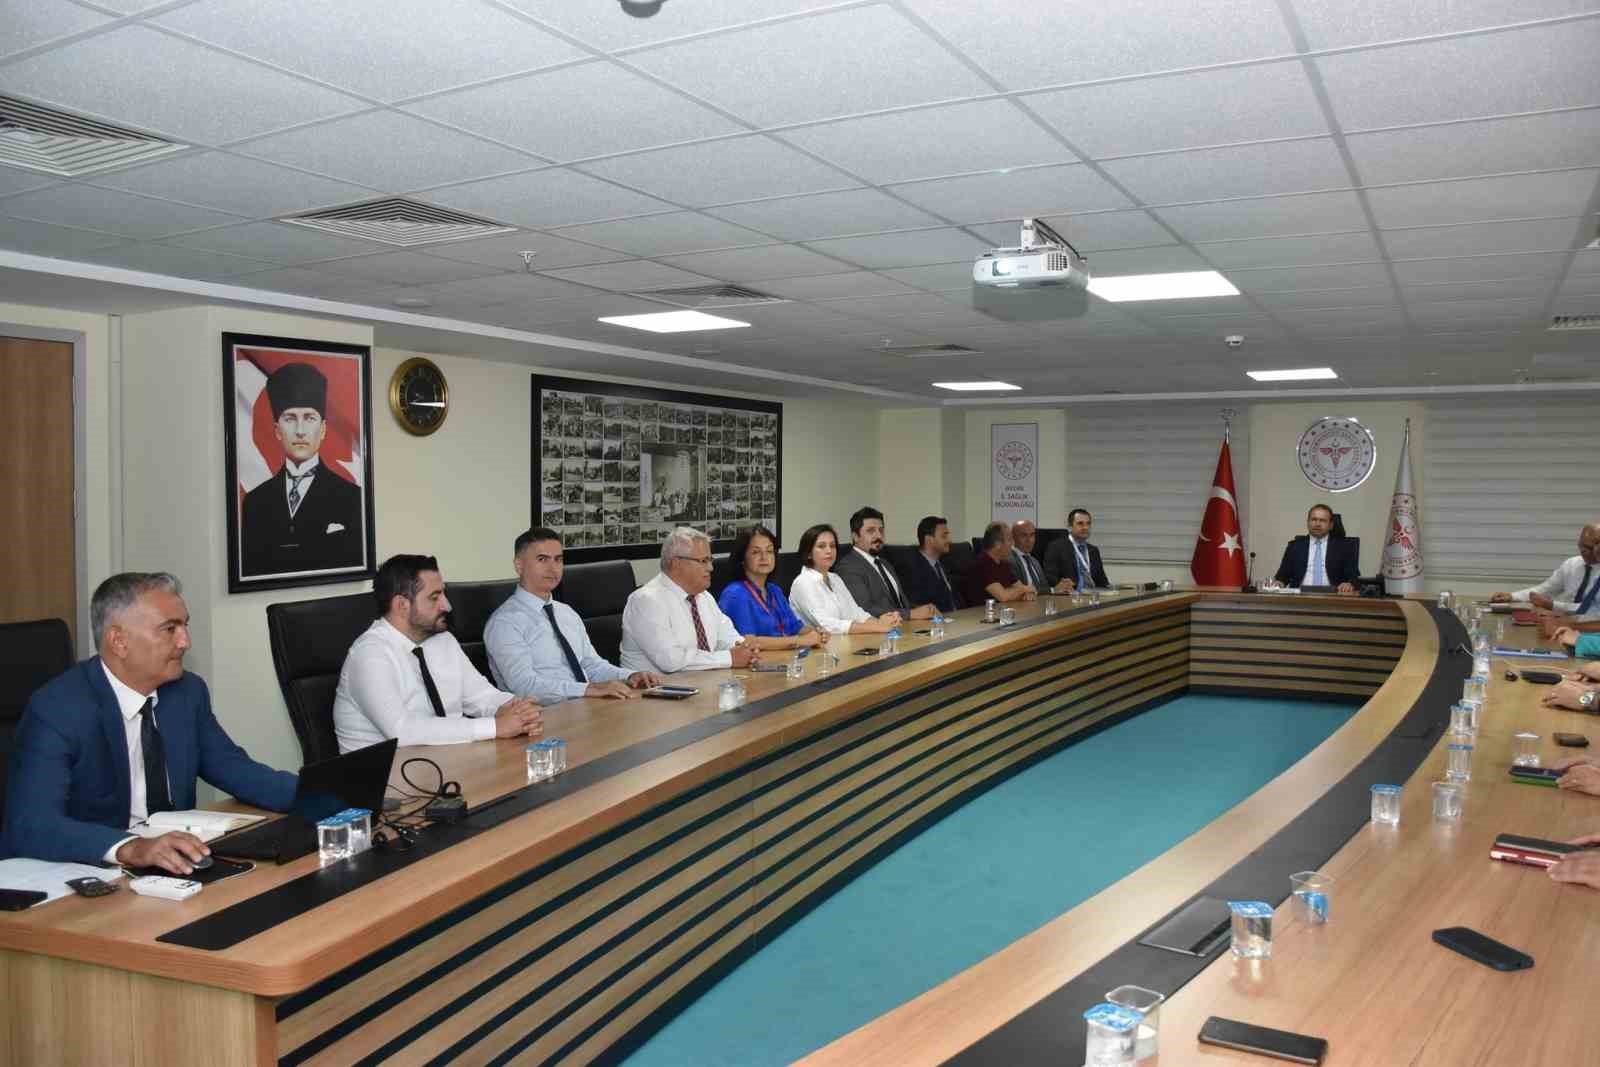 Aydın’da Kamu Hastaneleri Hizmet Değerlendirme Toplantısı gerçekleştirildi
